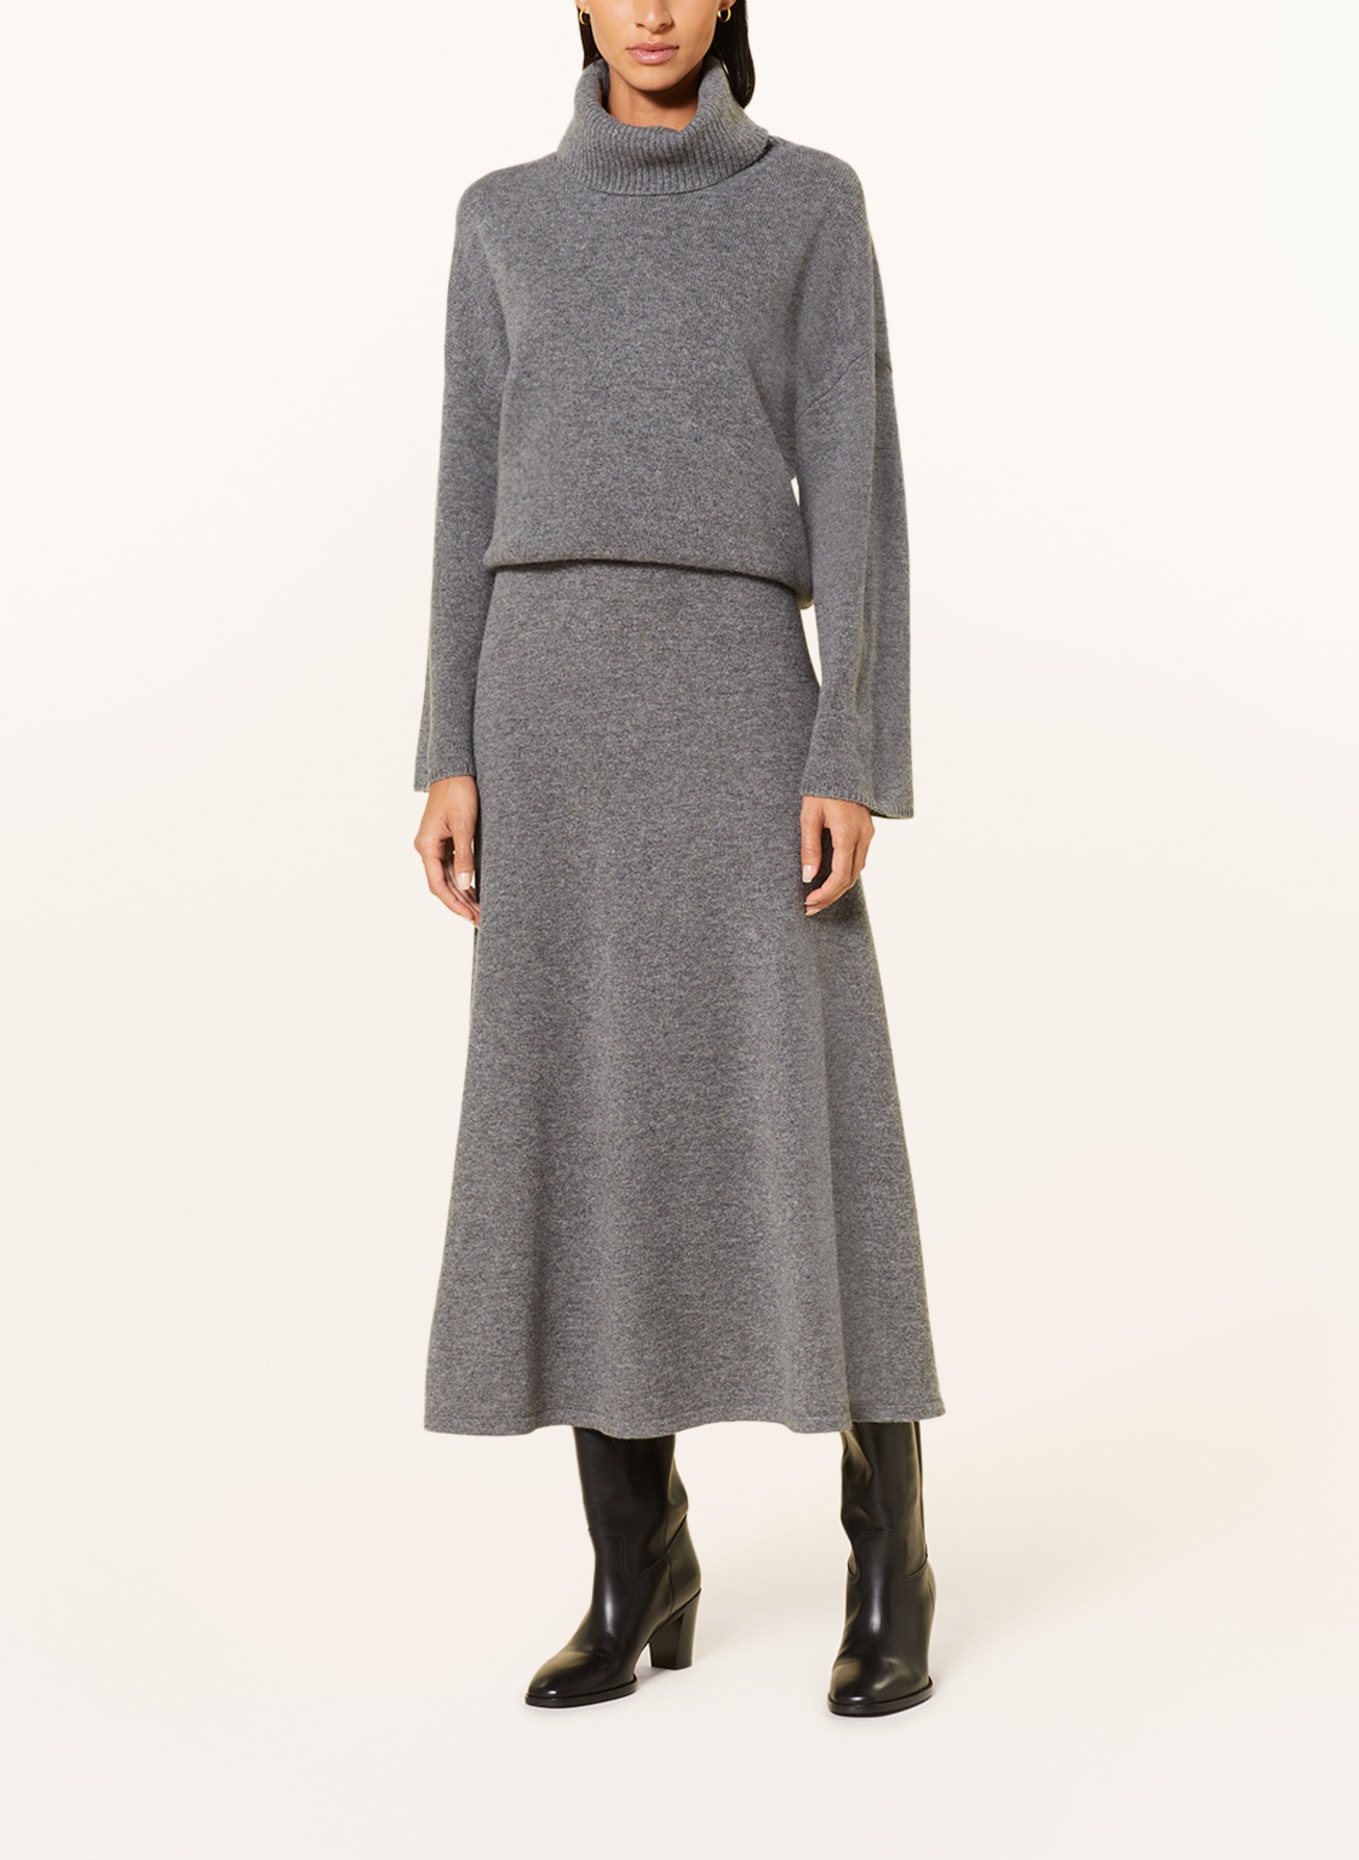 MRS & HUGS Knit skirt in merino wool, Color: GRAY (Image 2)